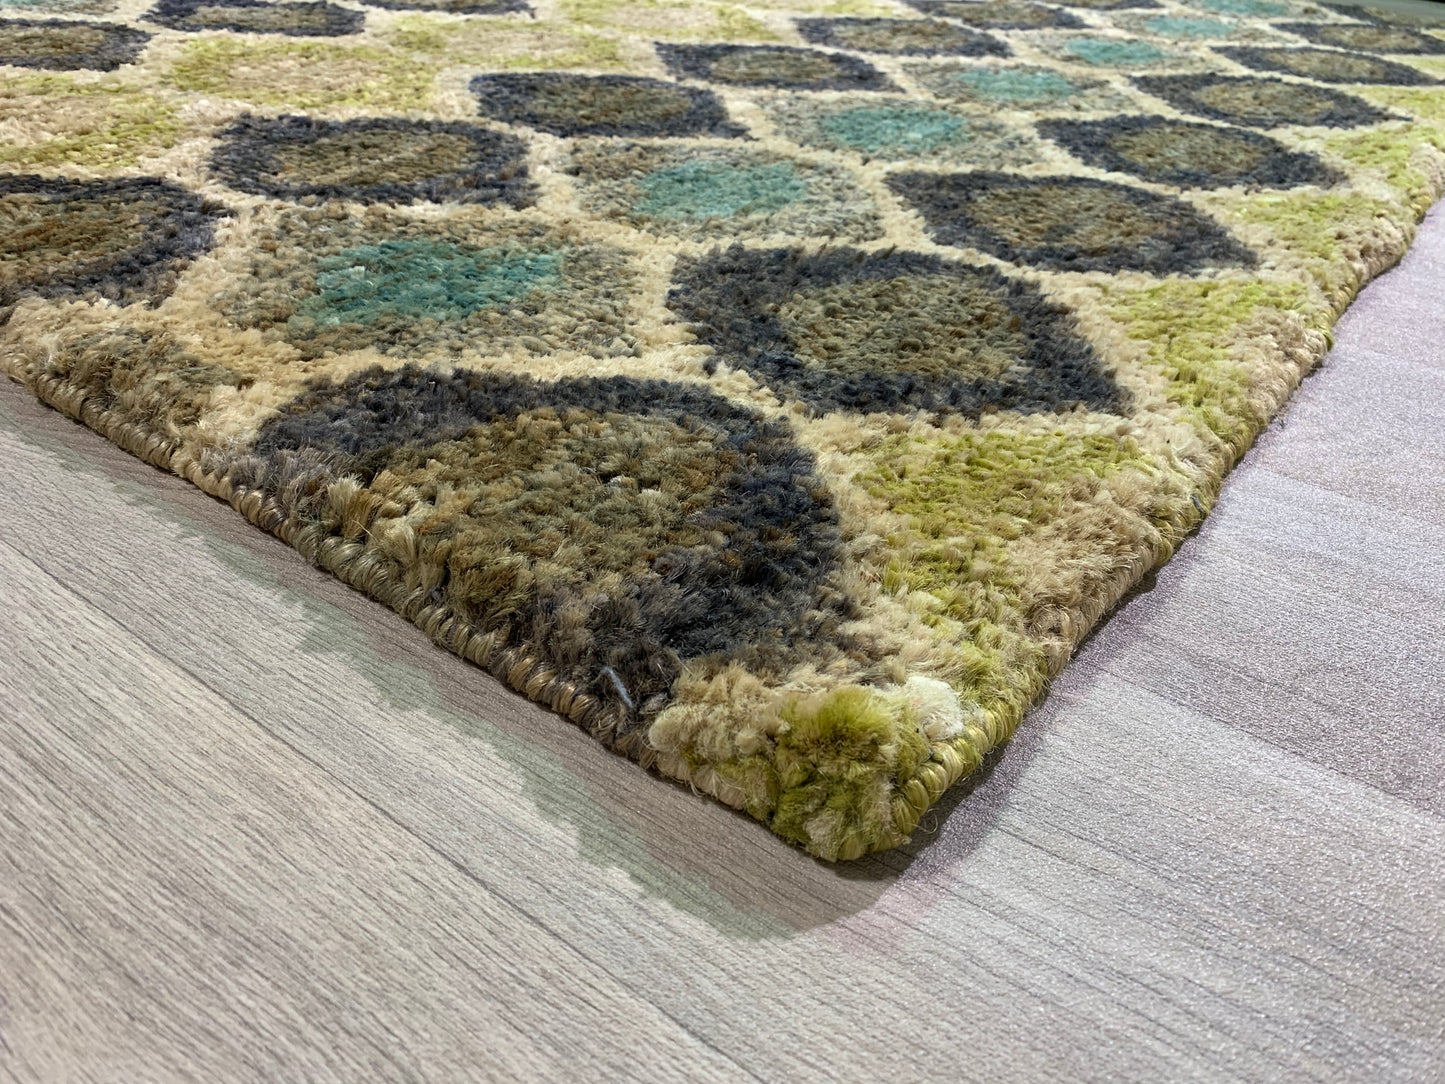 Jute patterned rug